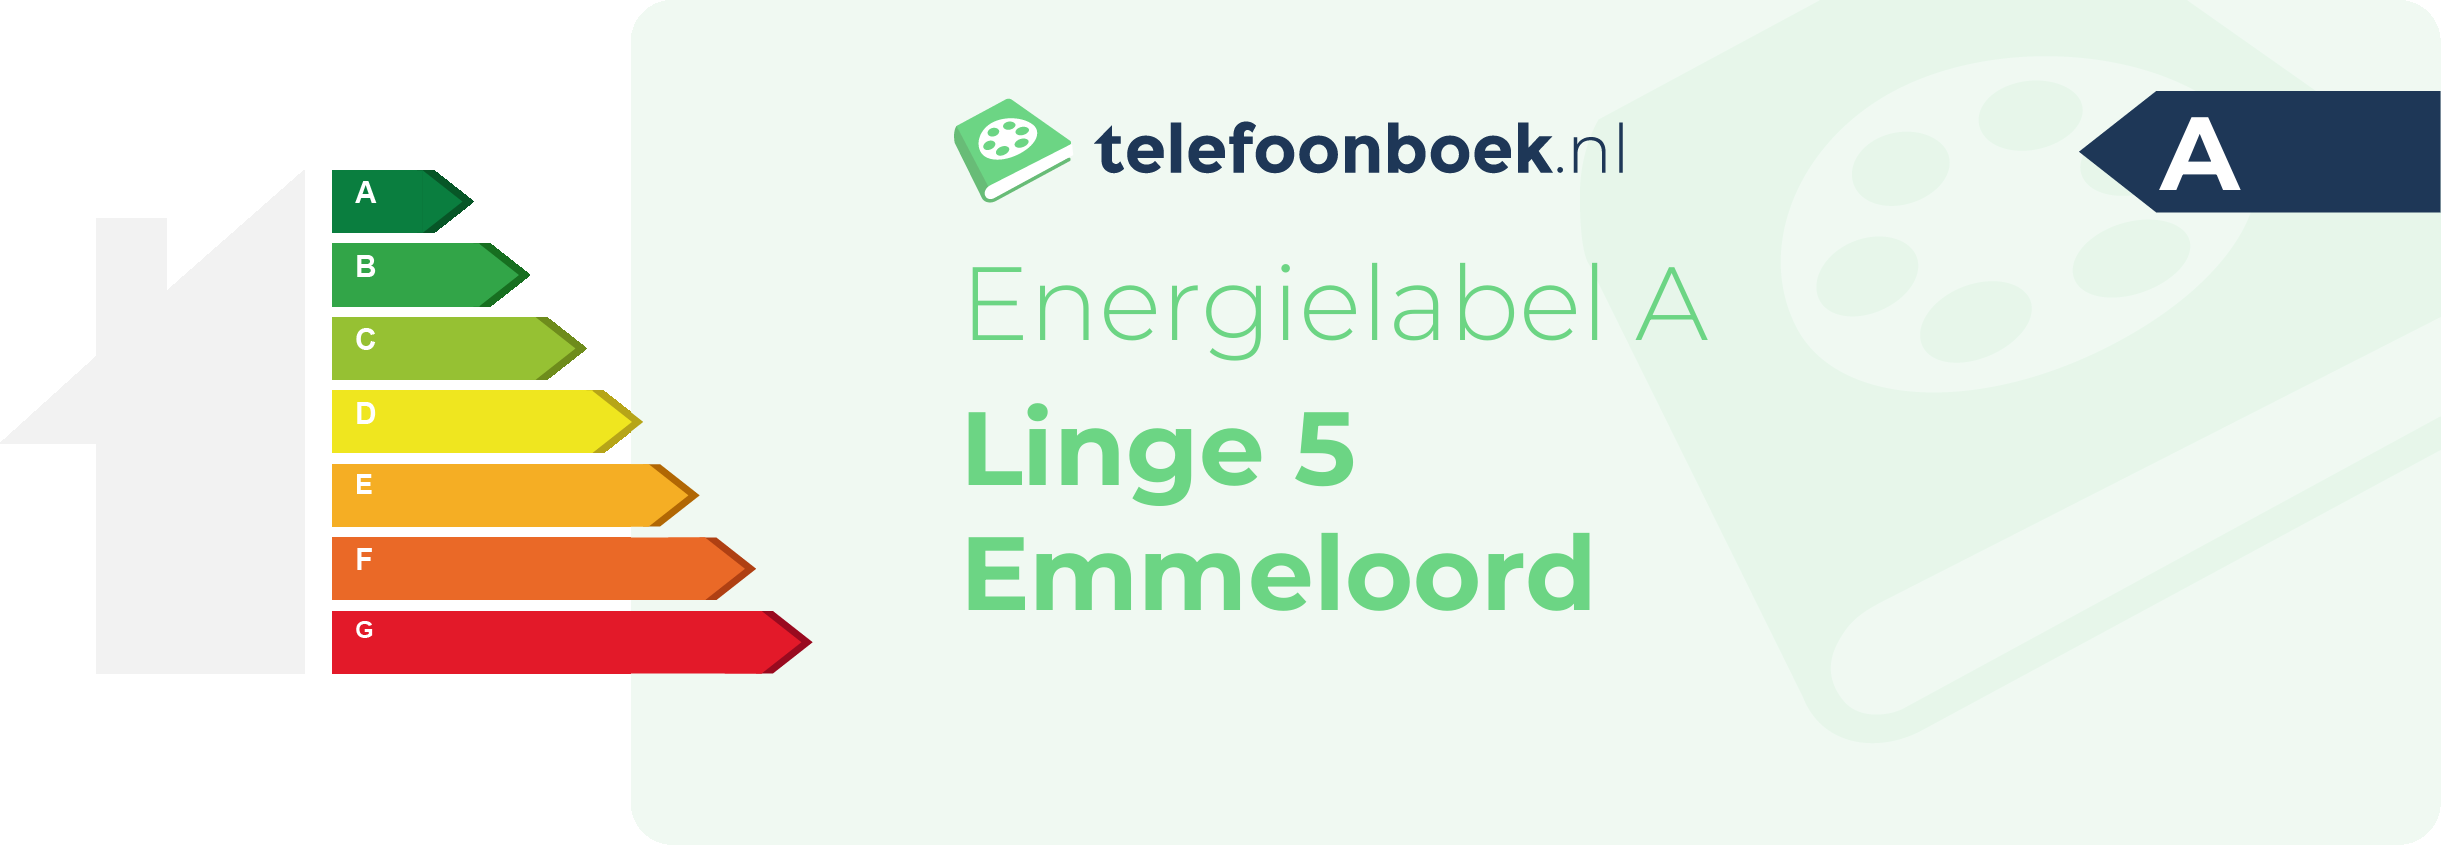 Energielabel Linge 5 Emmeloord